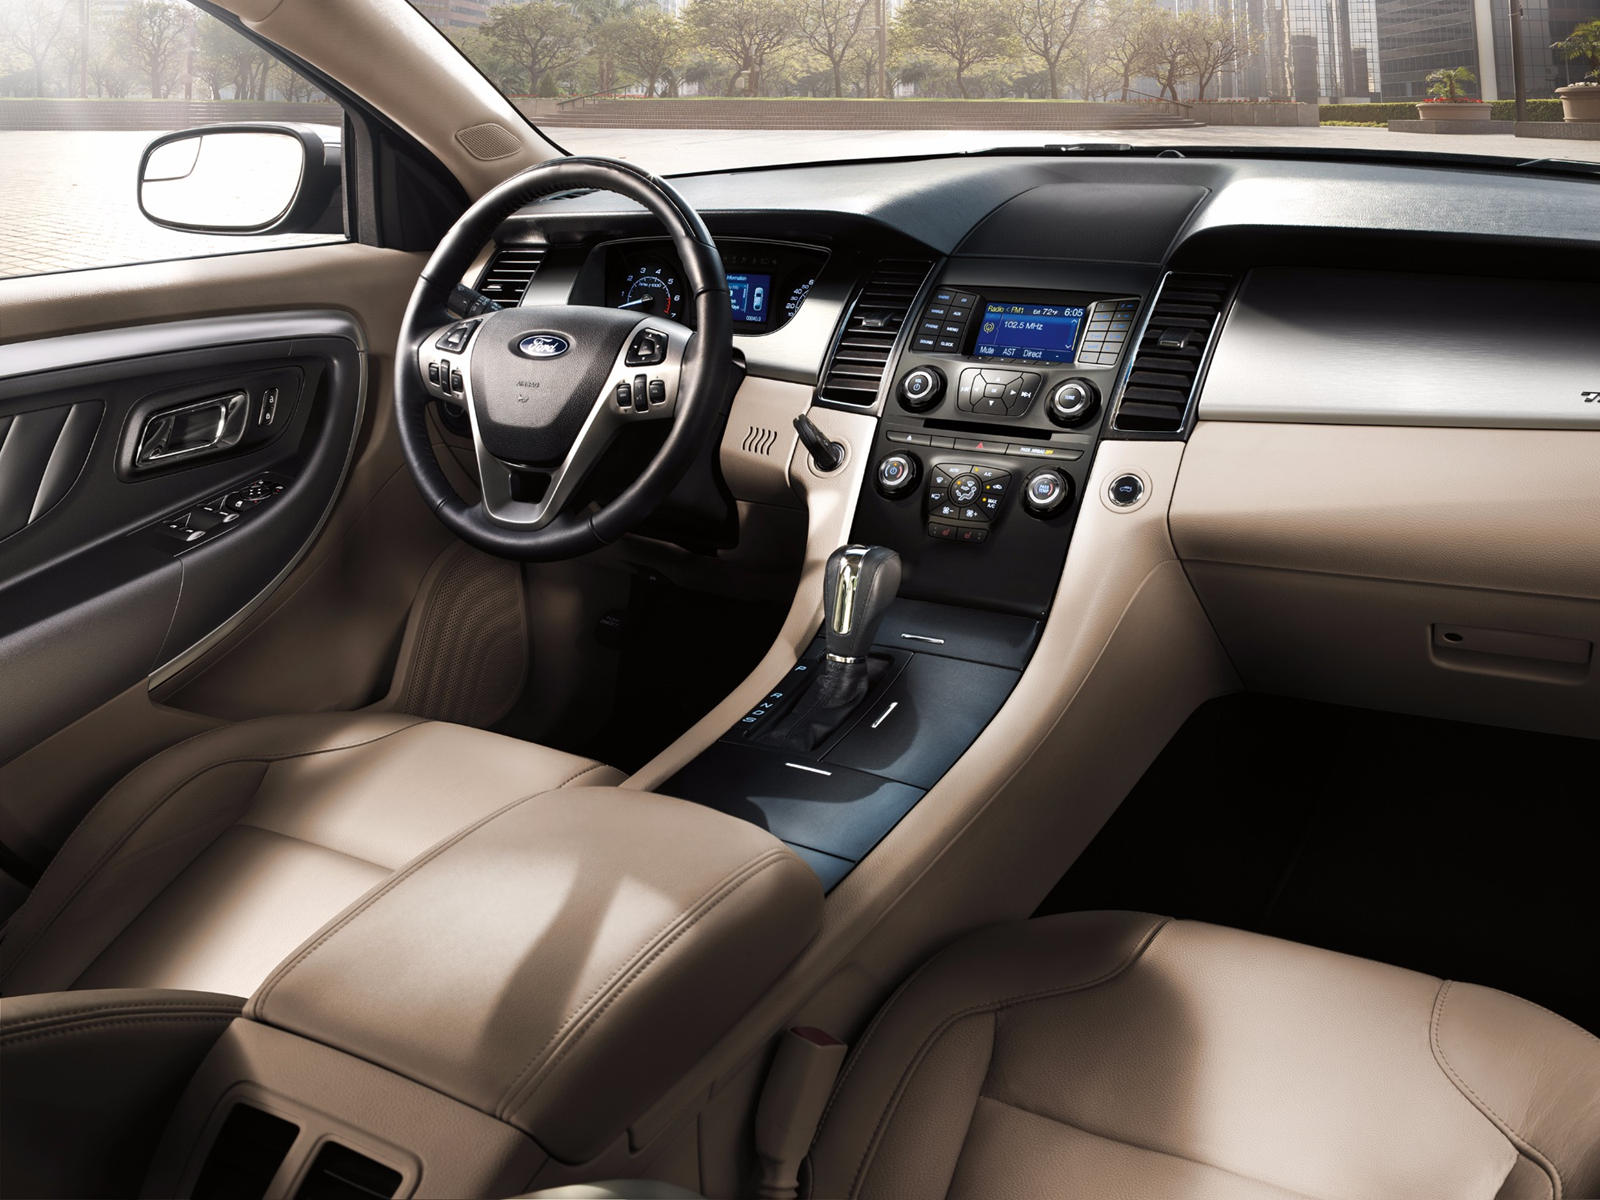 2013 Ford Taurus Interior Photos | CarBuzz